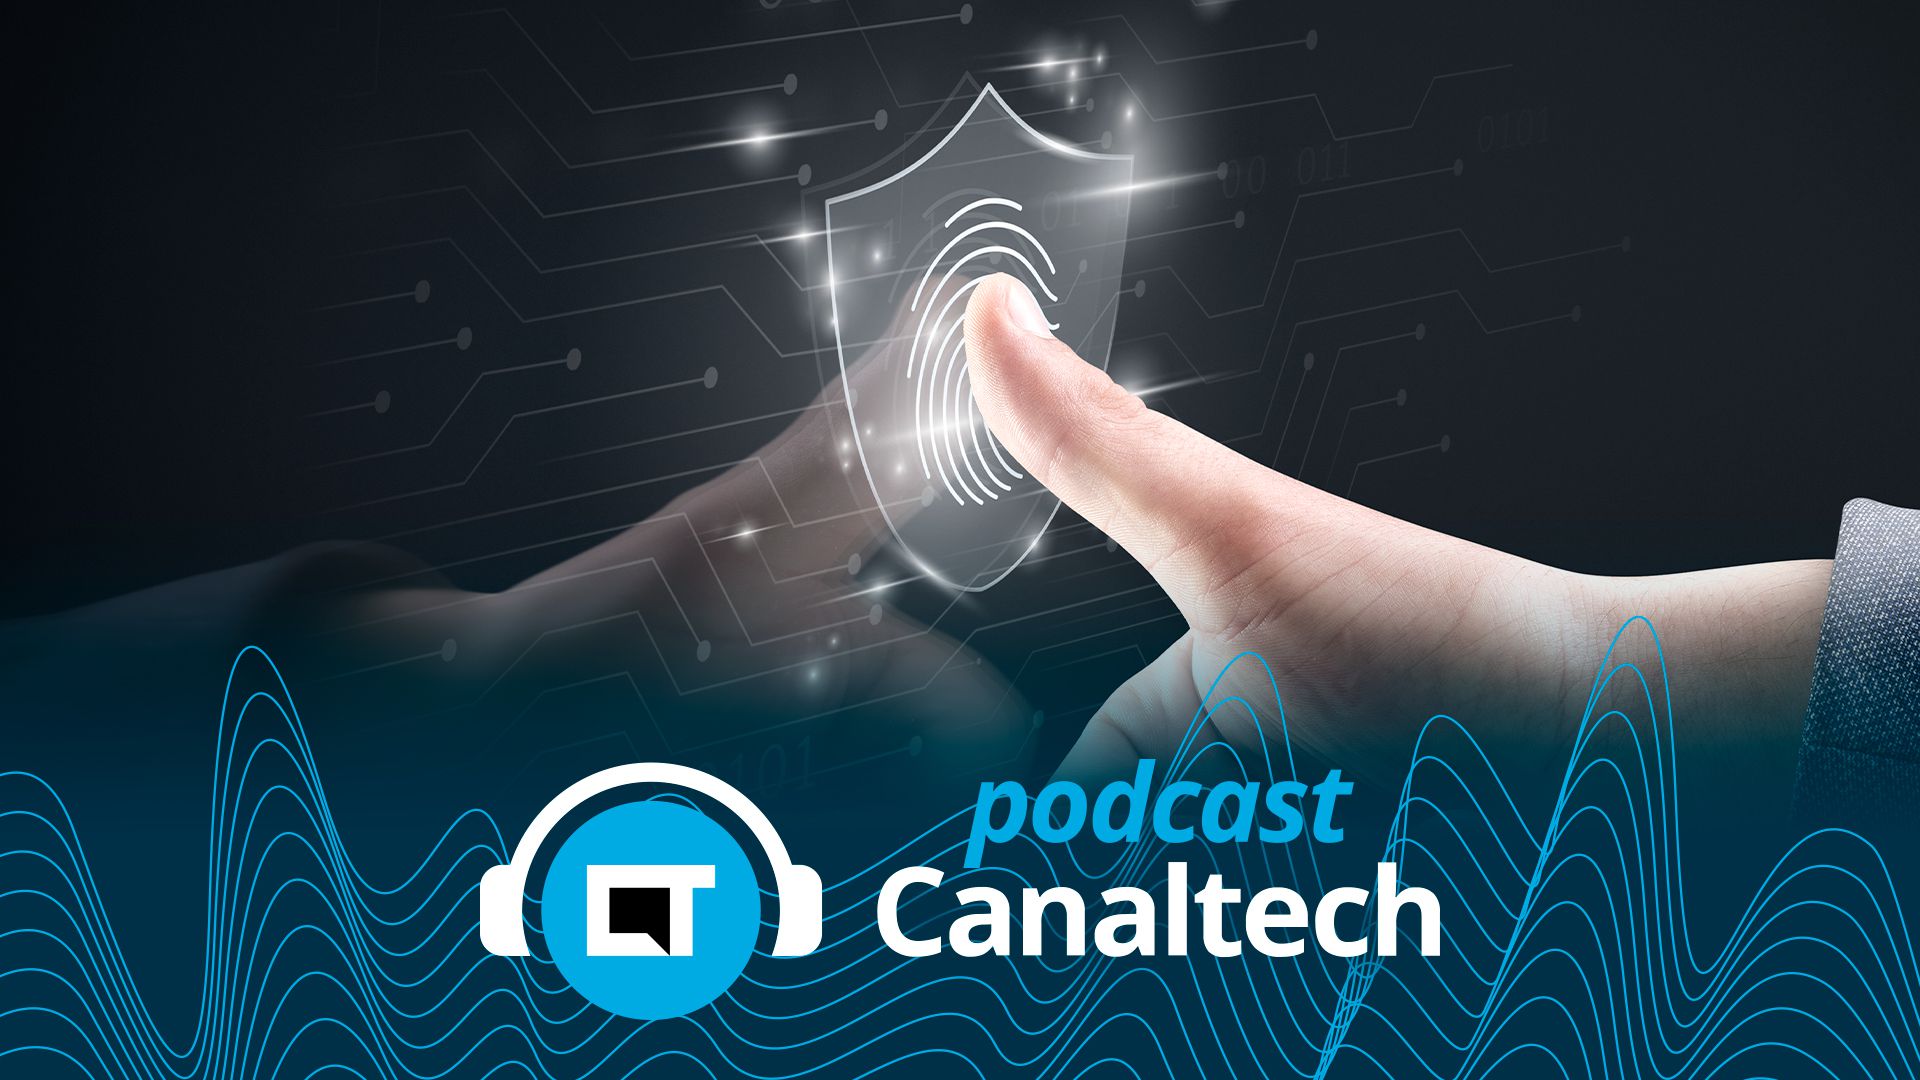 Transações autenticadas por biometria deve crescer quase 400% - Podcasts - Canaltech